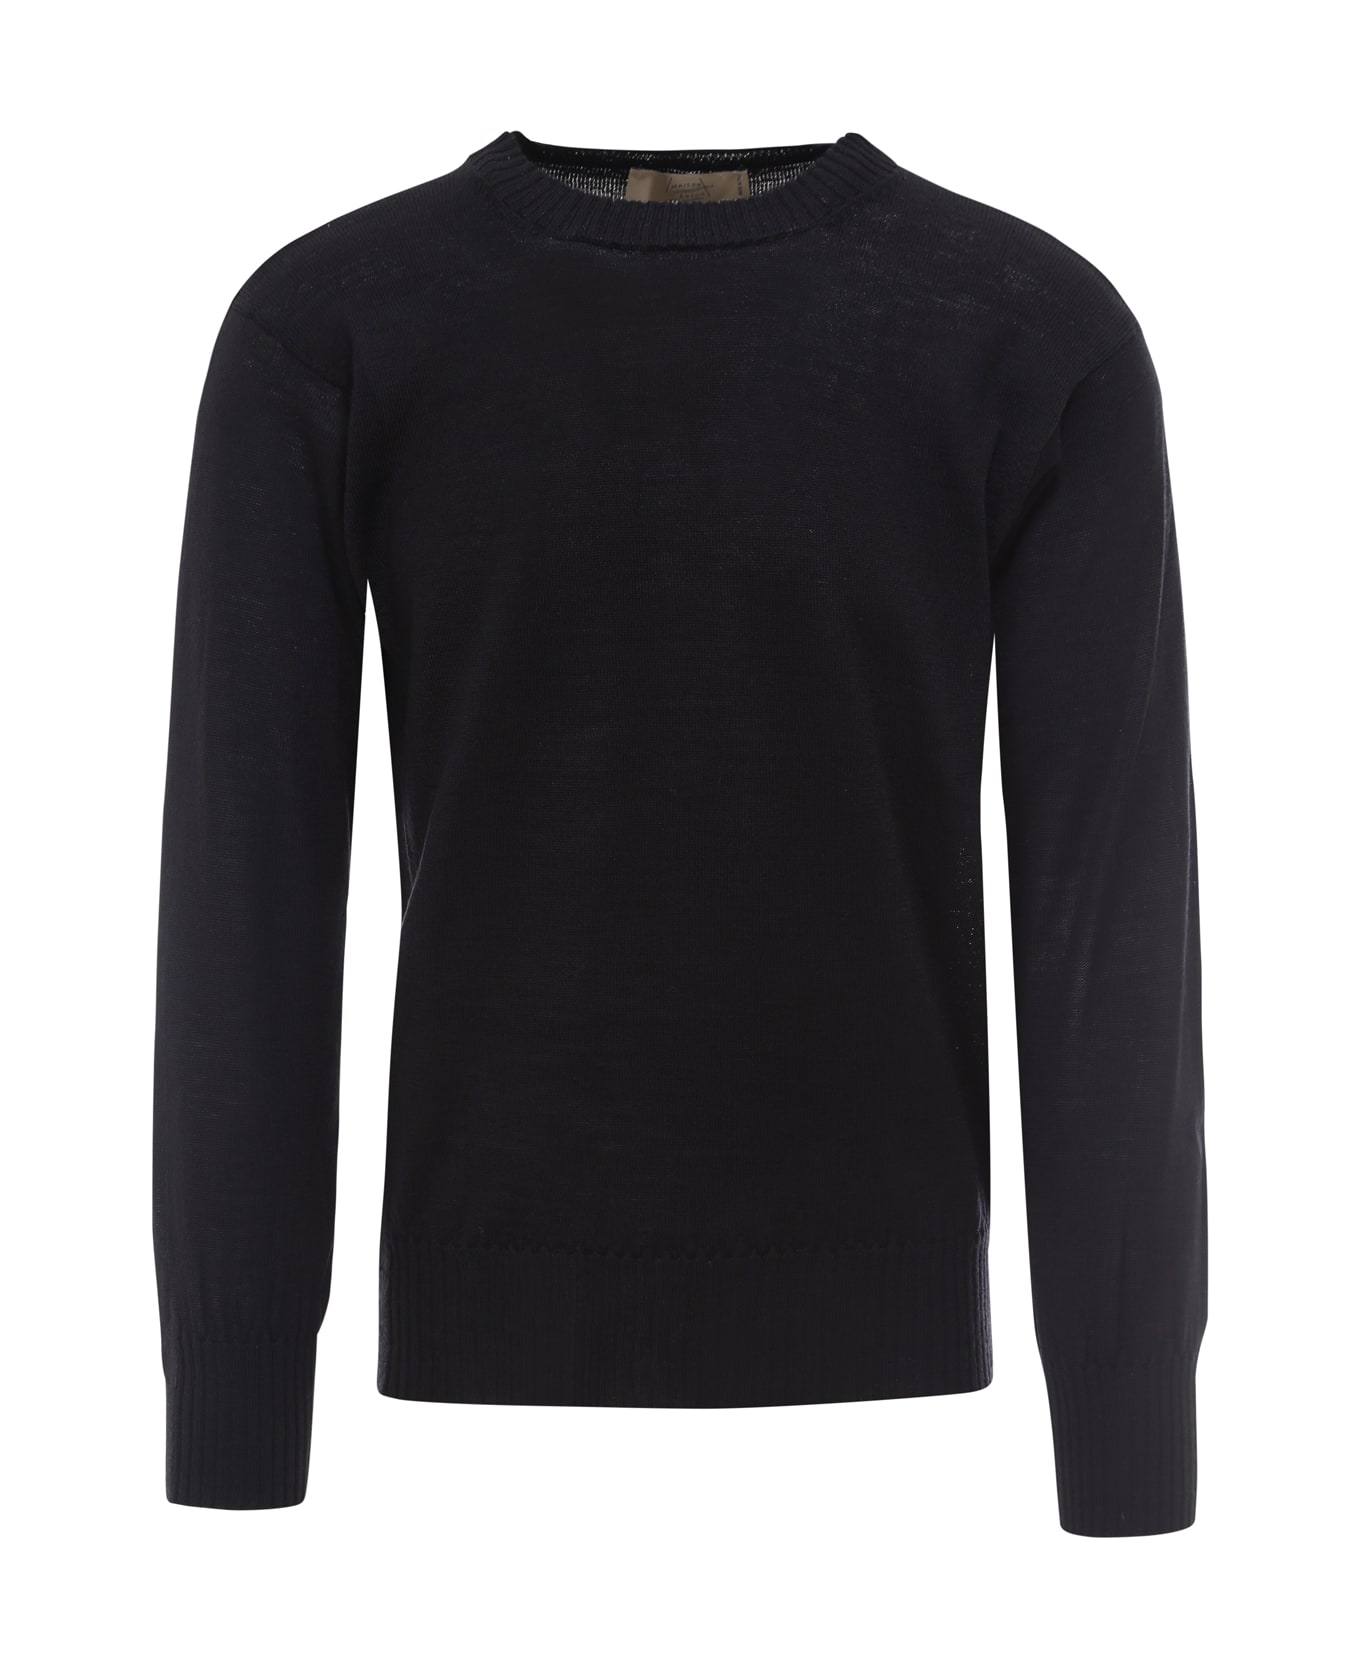 Maison Flaneur Sweater - Black